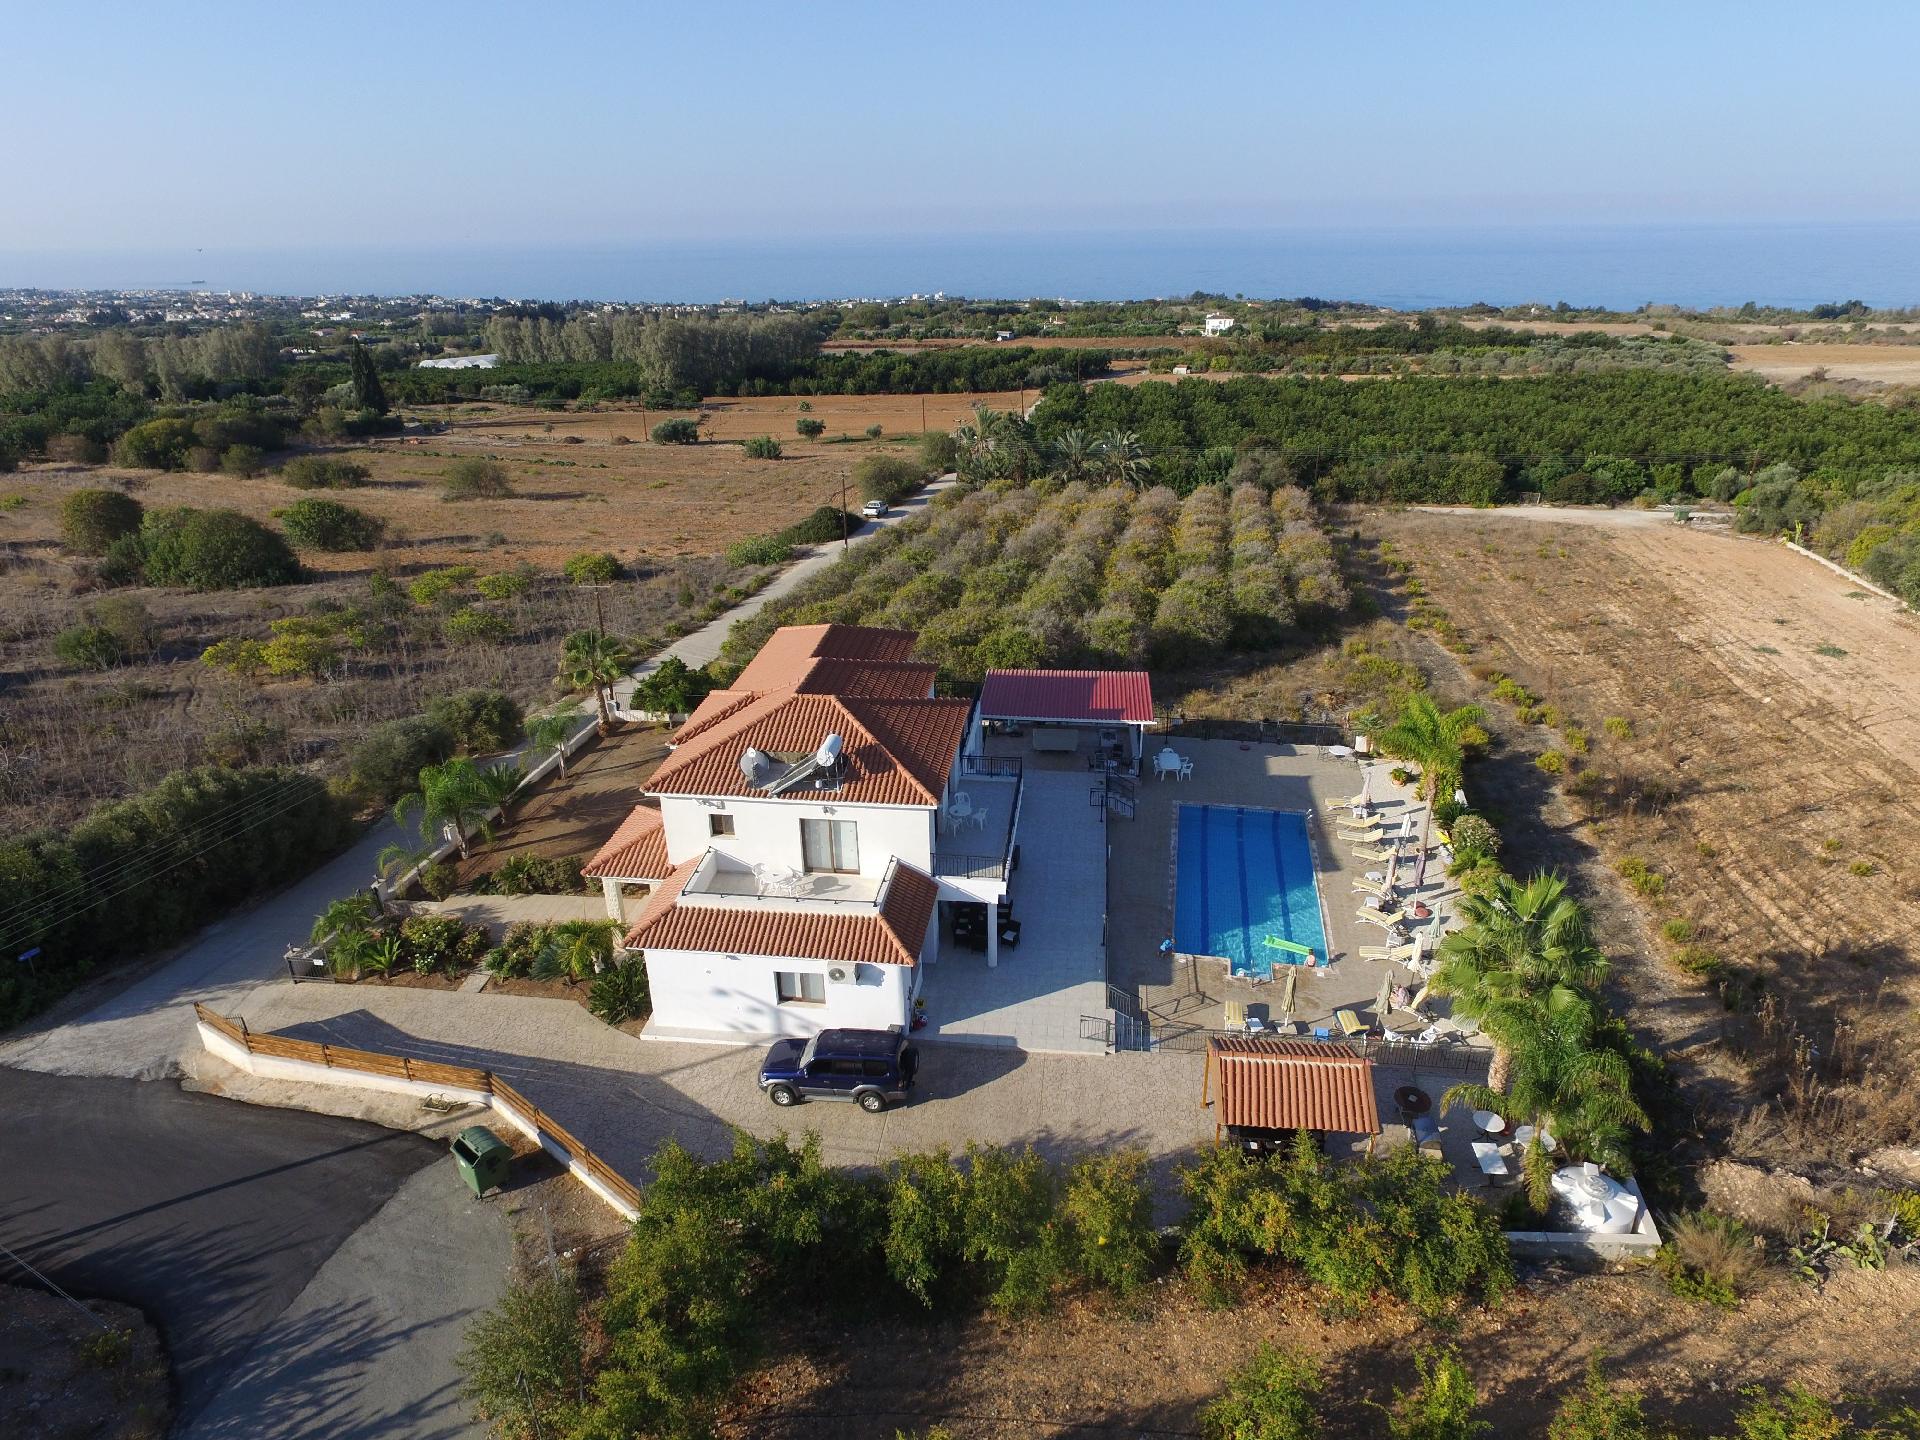 Ferienhaus mit Privatpool für 8 Personen  + 2 Ferienhaus in Zypern